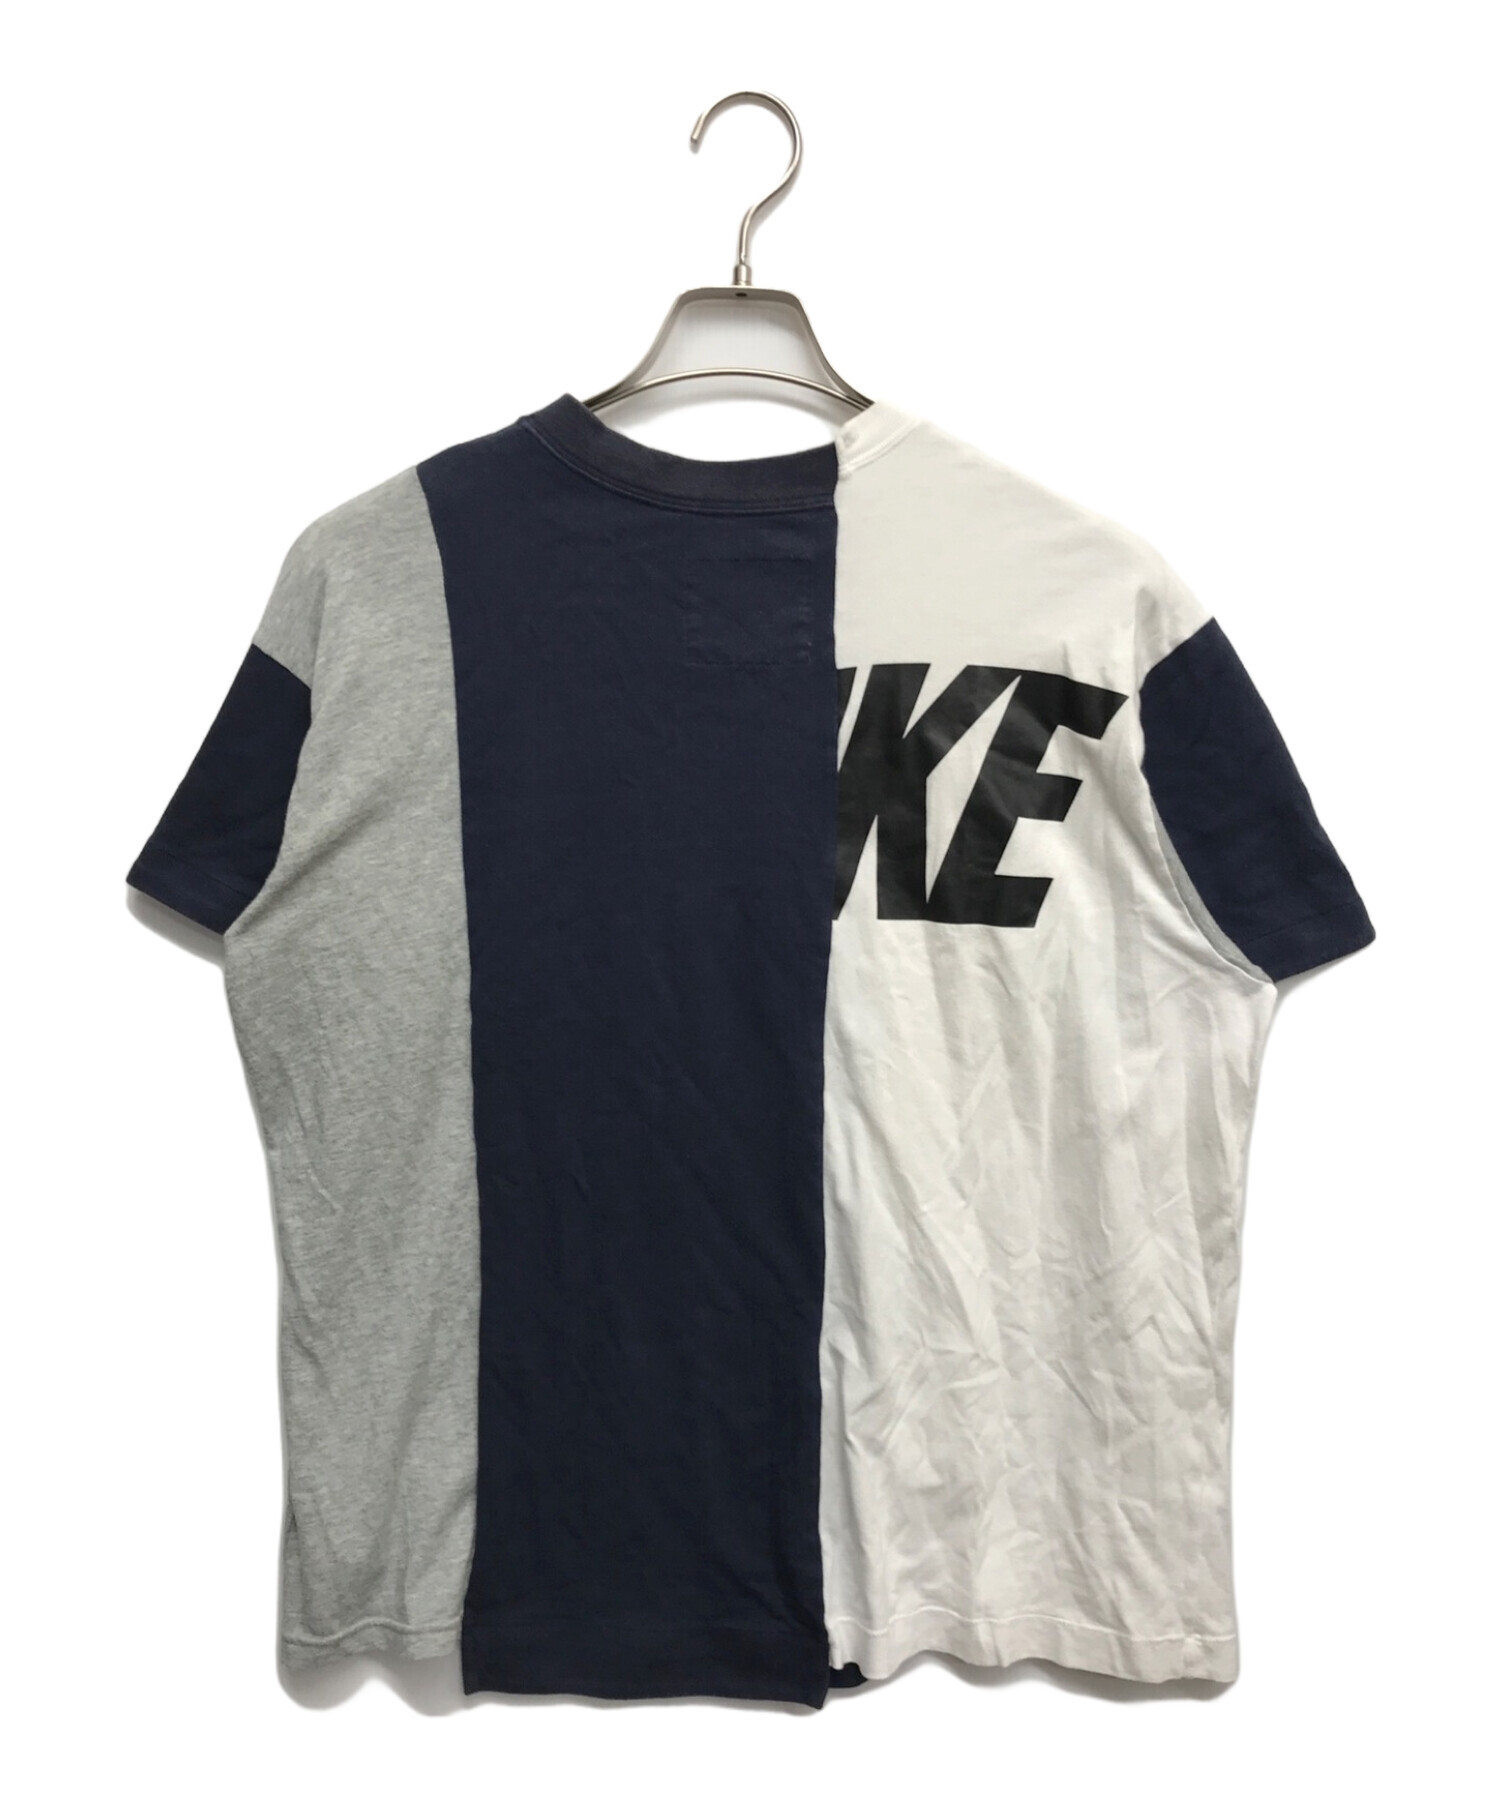 sacai (サカイ) NIKE (ナイキ) 再構築Tシャツ ホワイト×ネイビー サイズ:M